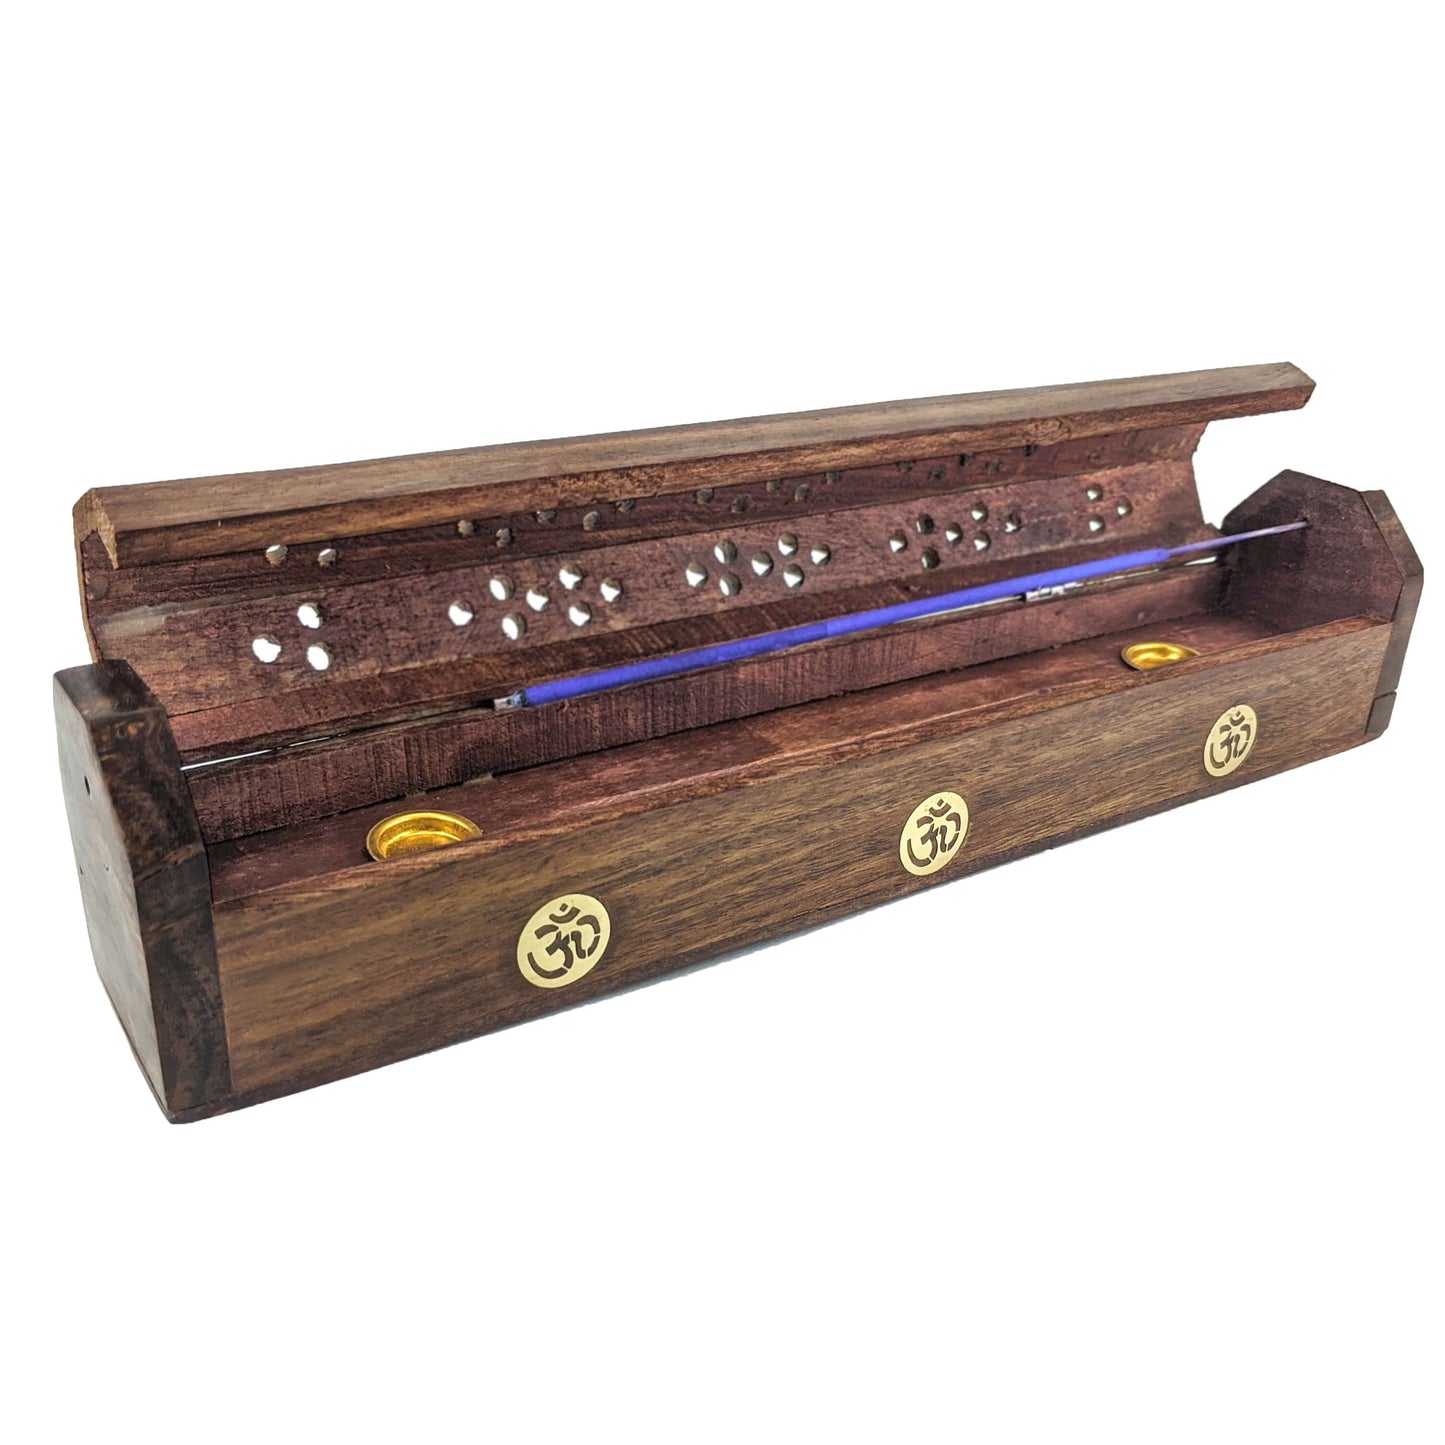 Carved Incense Holder Box with Storage, Symbol Design